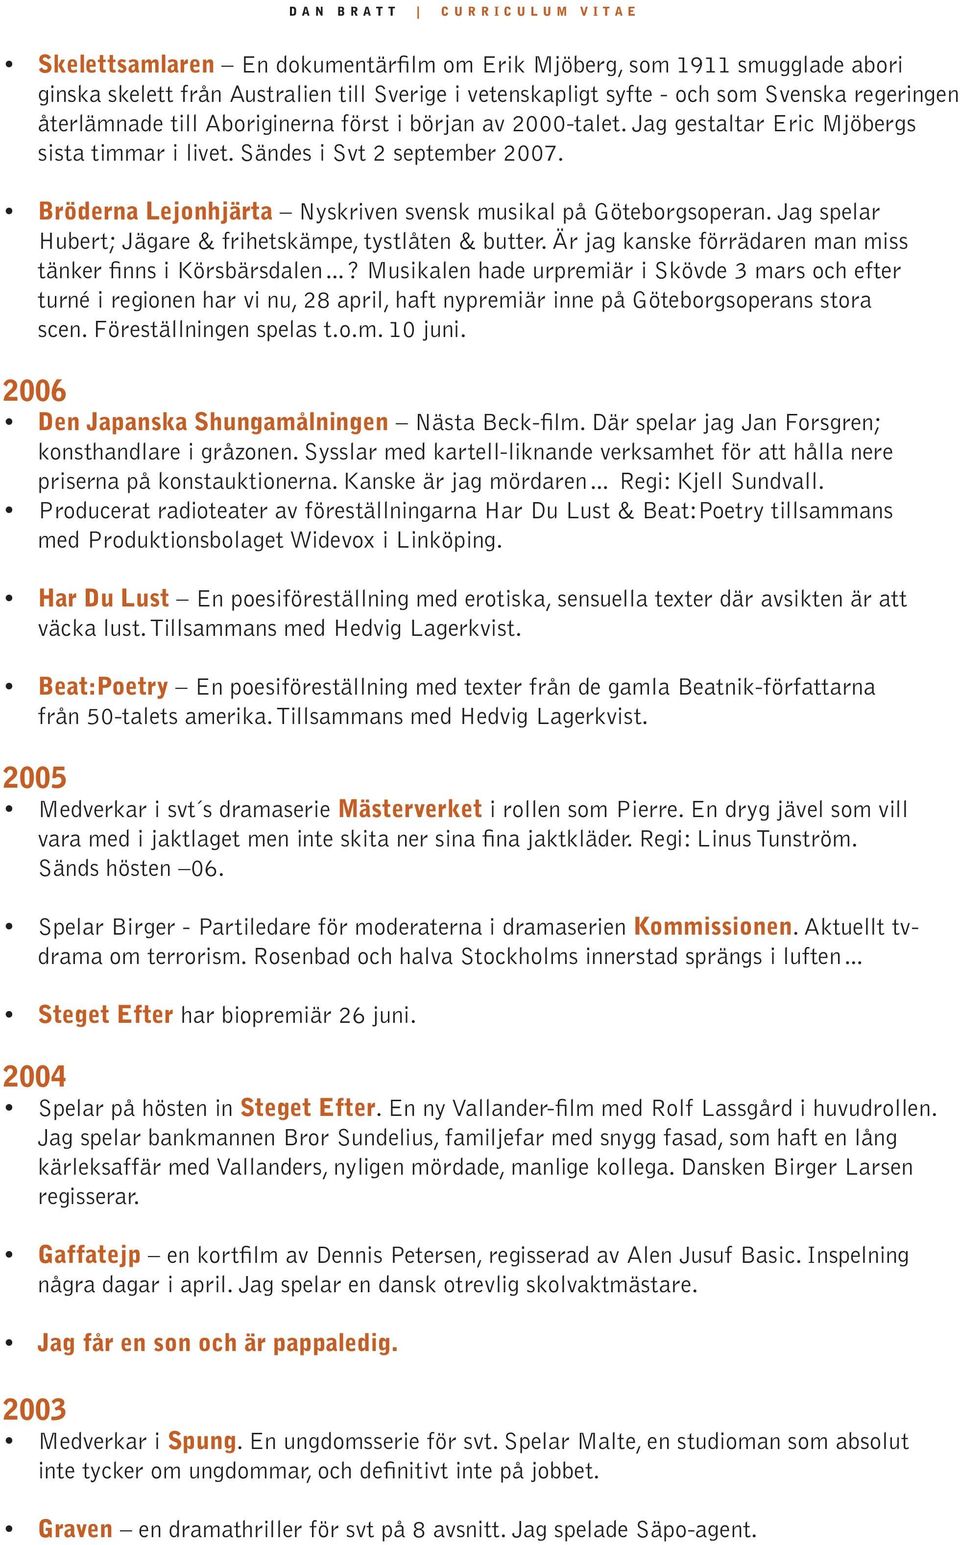 Bröderna Lejonhjärta Nyskriven svensk musikal på Göteborgsoperan. Jag spelar Hubert; Jägare & frihetskämpe, tystlåten & butter. Är jag kanske förrädaren man miss tänker finns i Körsbärsdalen?